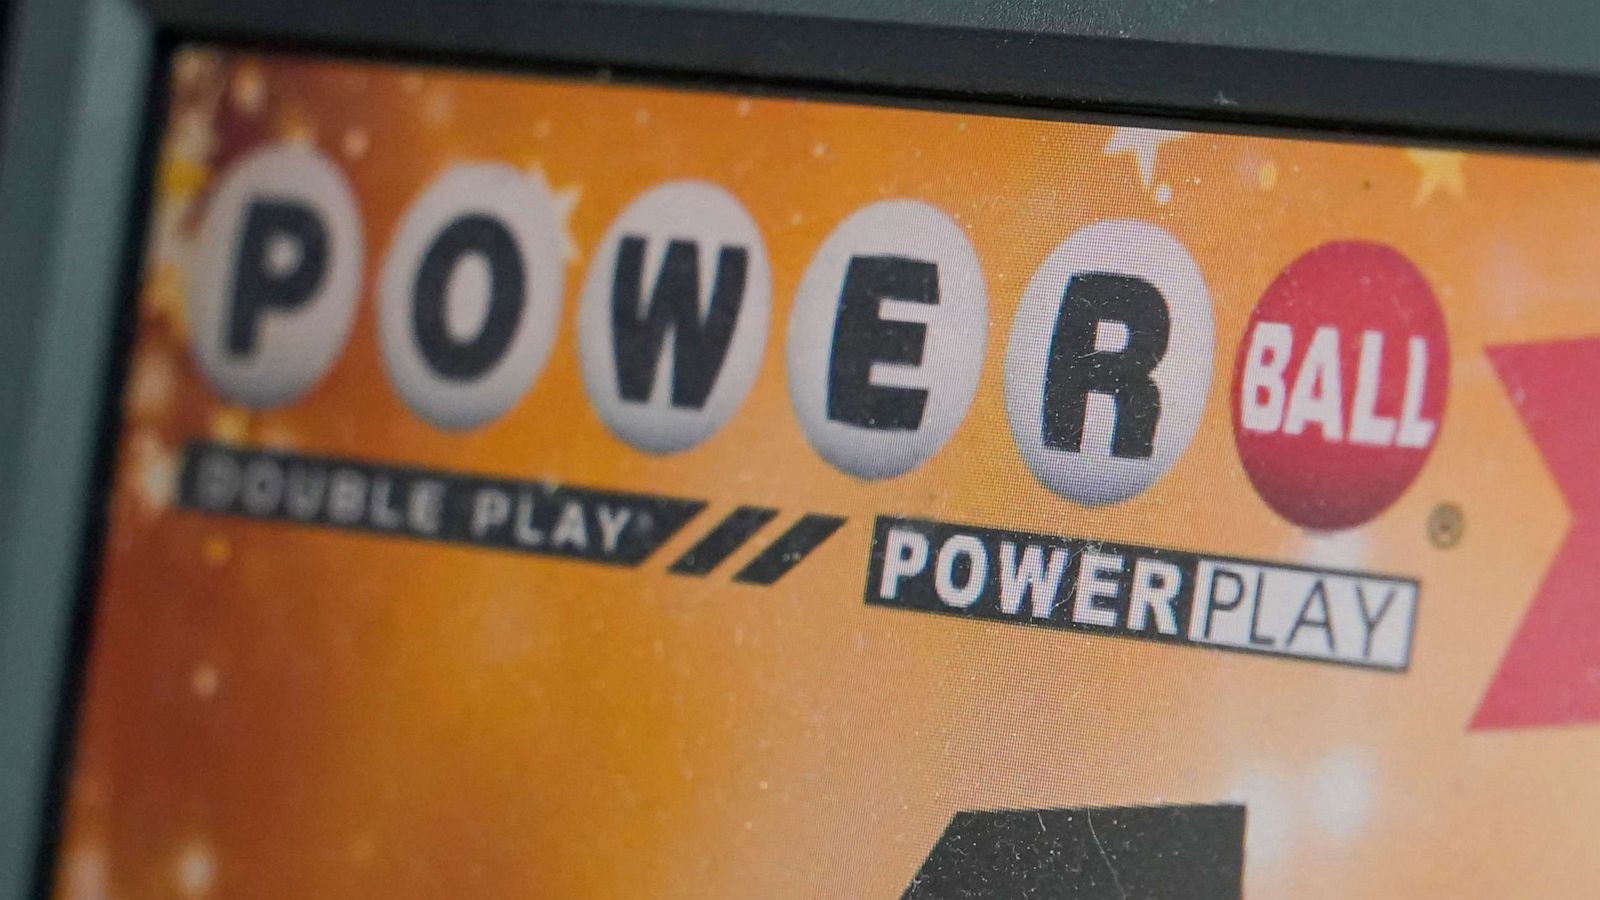 โอกาสของคุณที่จะคว้าเงินจำนวน 865 ล้านเหรียญสหรัฐกำลังจะเกิดขึ้น: สิ่งที่ต้องรู้เกี่ยวกับการออกรางวัล Powerball ที่กำลังจะมีขึ้น